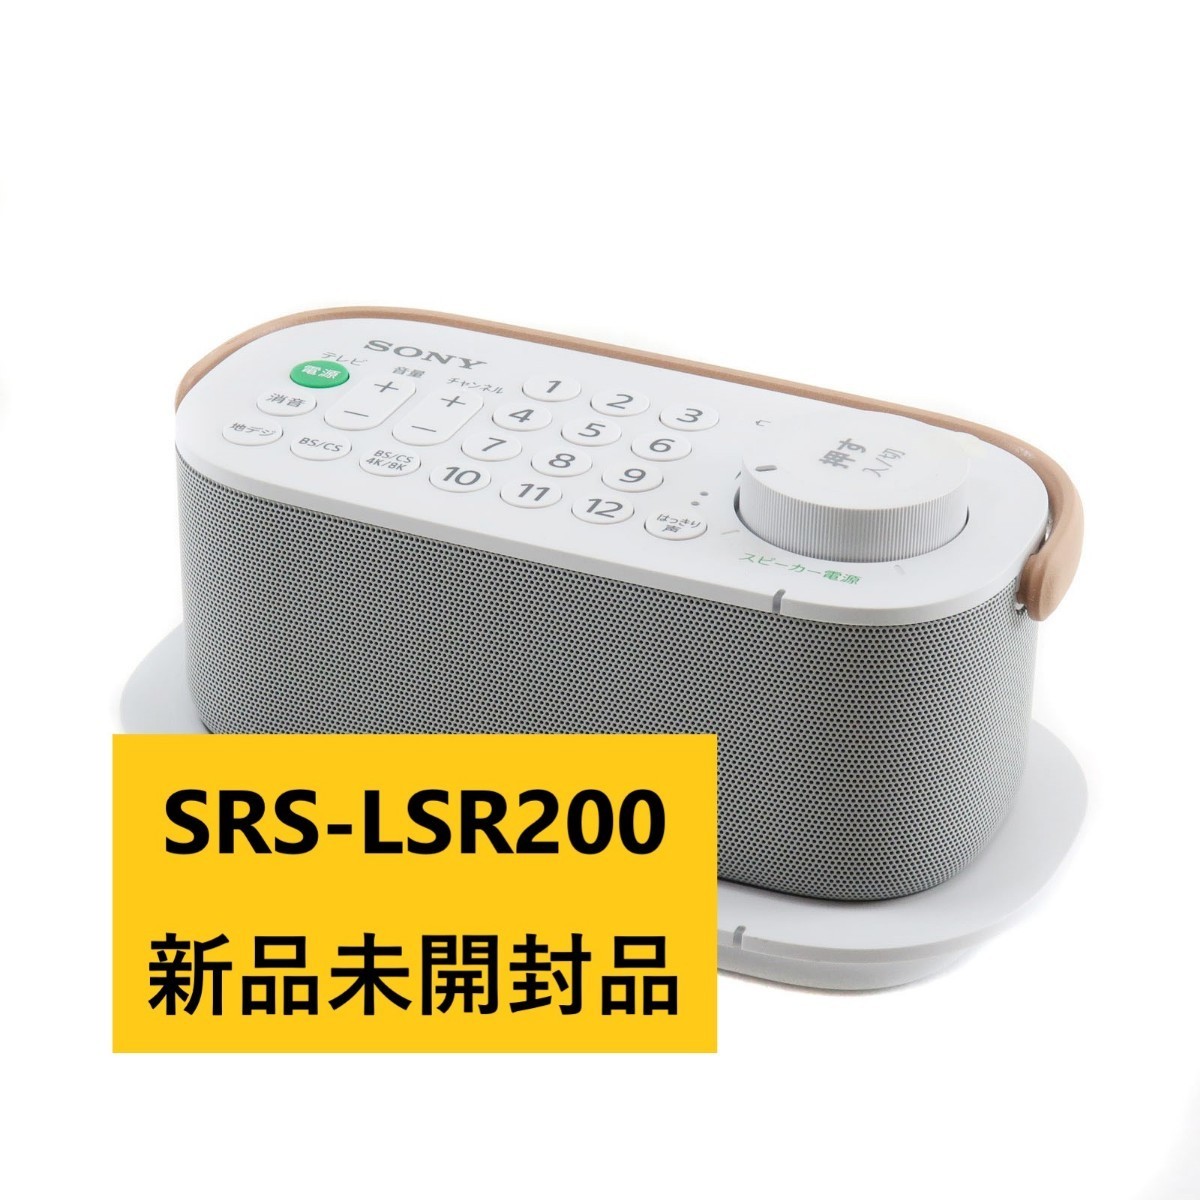 最高 新品未開封品 SRS-LSR200 お手元テレビスピーカー ソニー